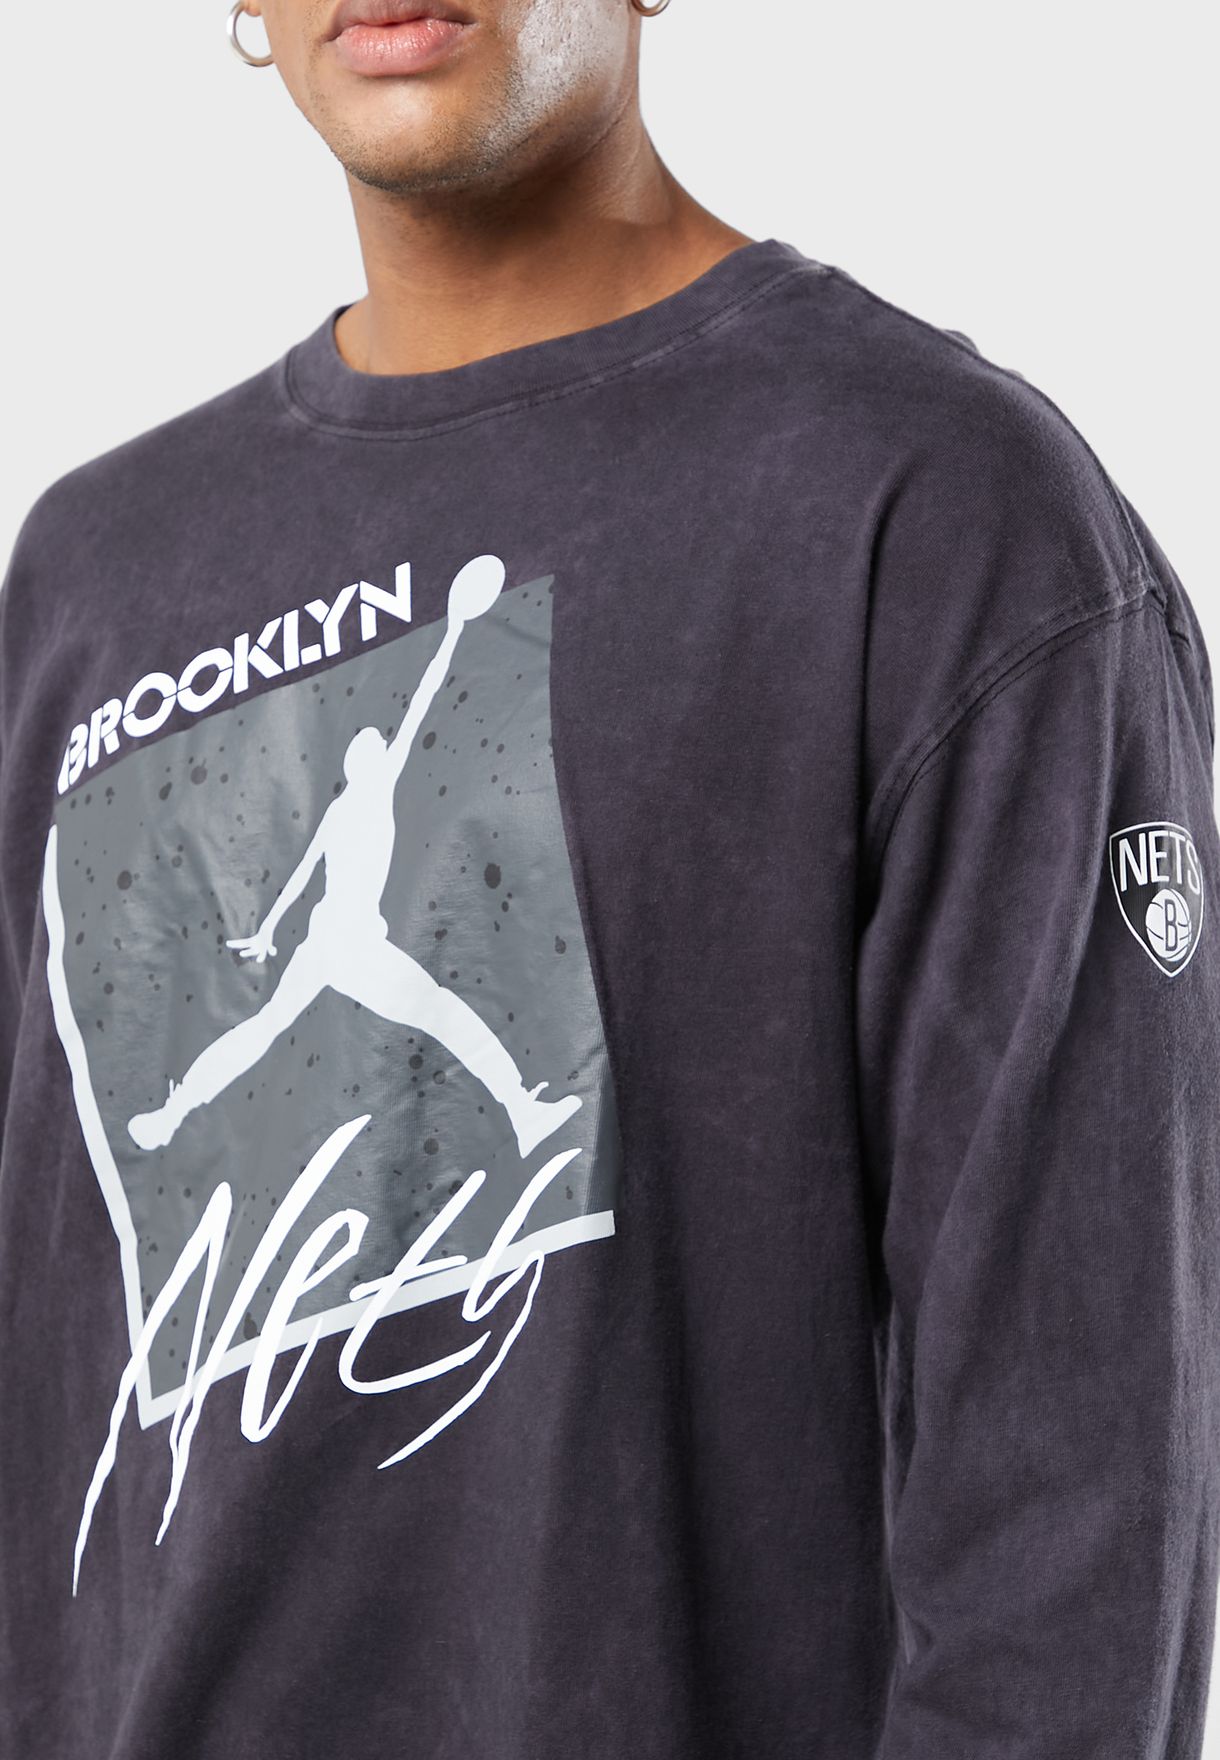 Brooklyn Nets Statement T-Shirt